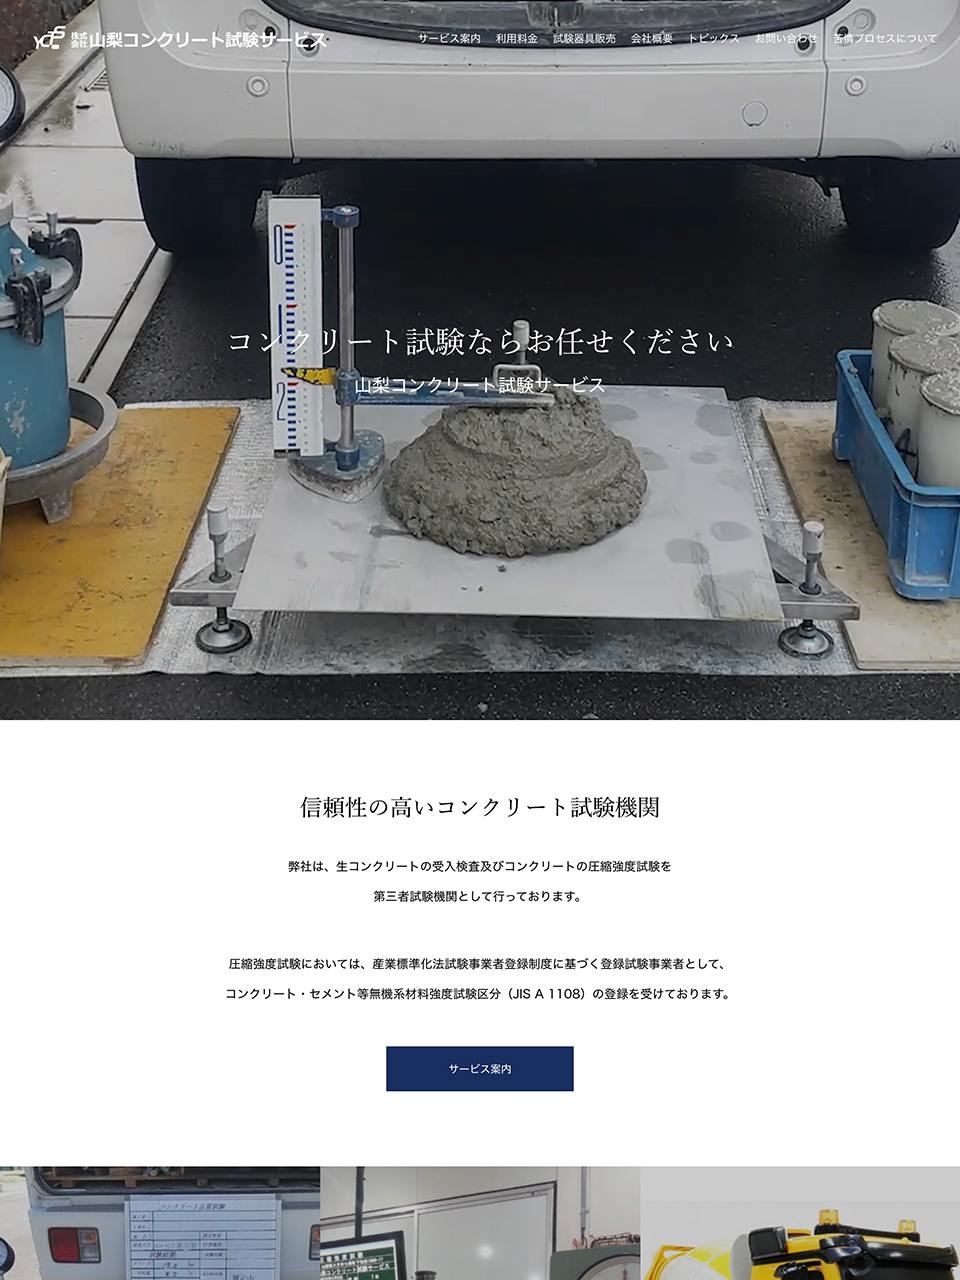 Yamanashi Concrete Testing Service